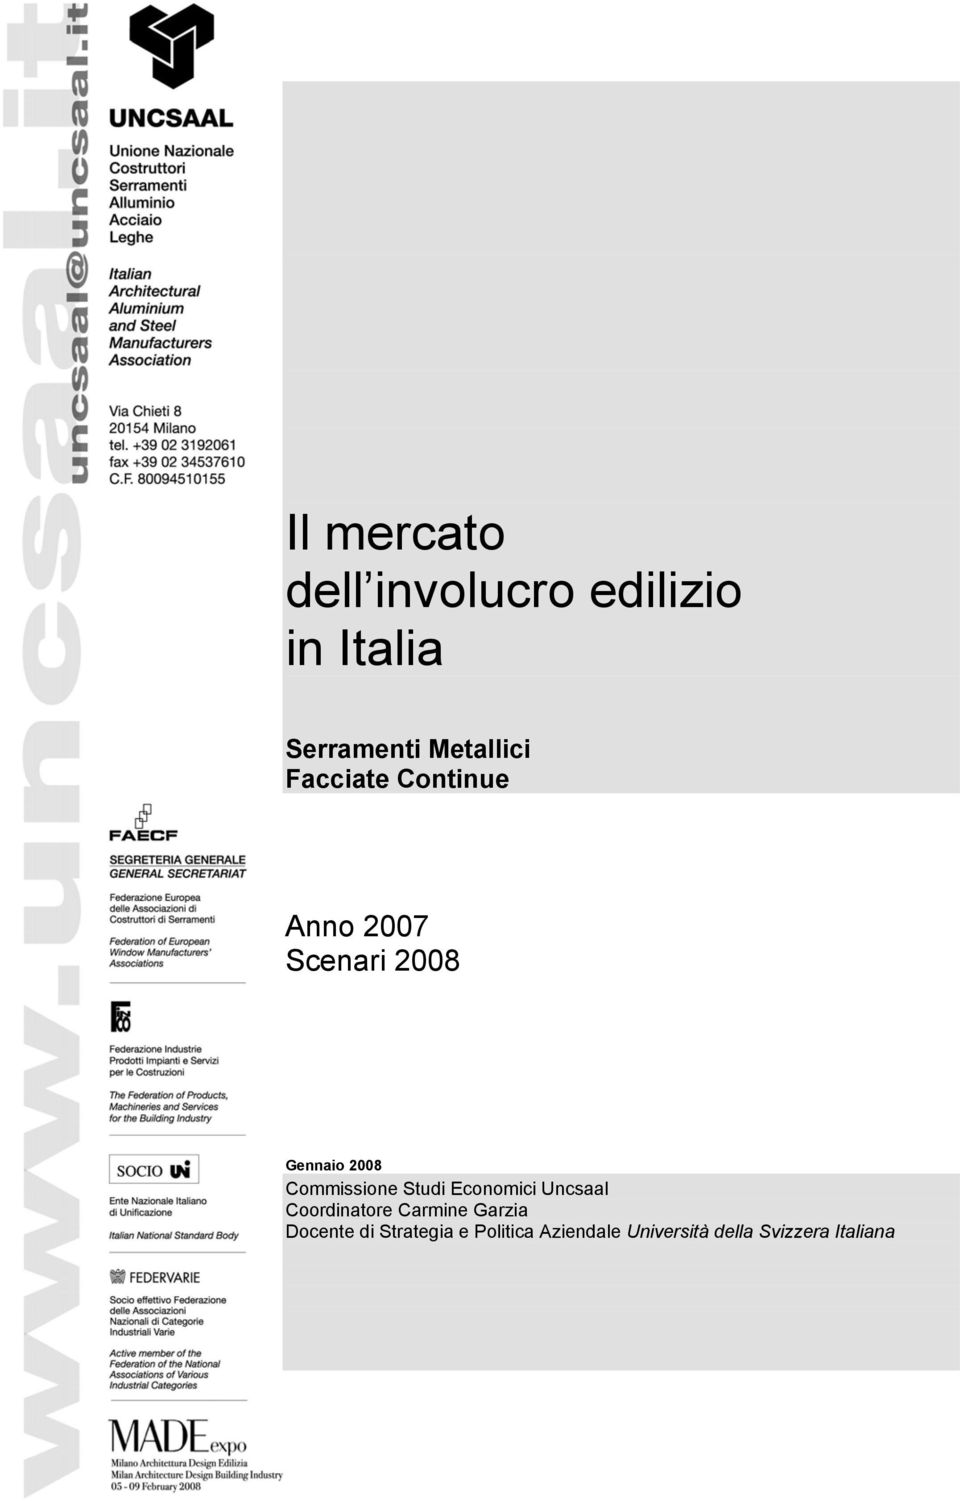 Commissione Studi Economici Uncsaal Coordinatore Carmine Garzia